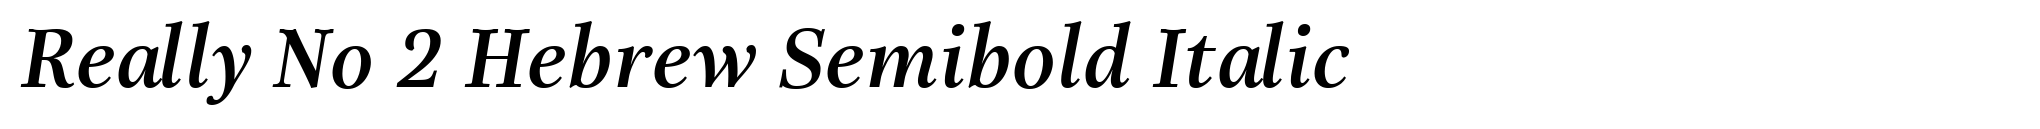 Really No 2 Hebrew Semibold Italic image